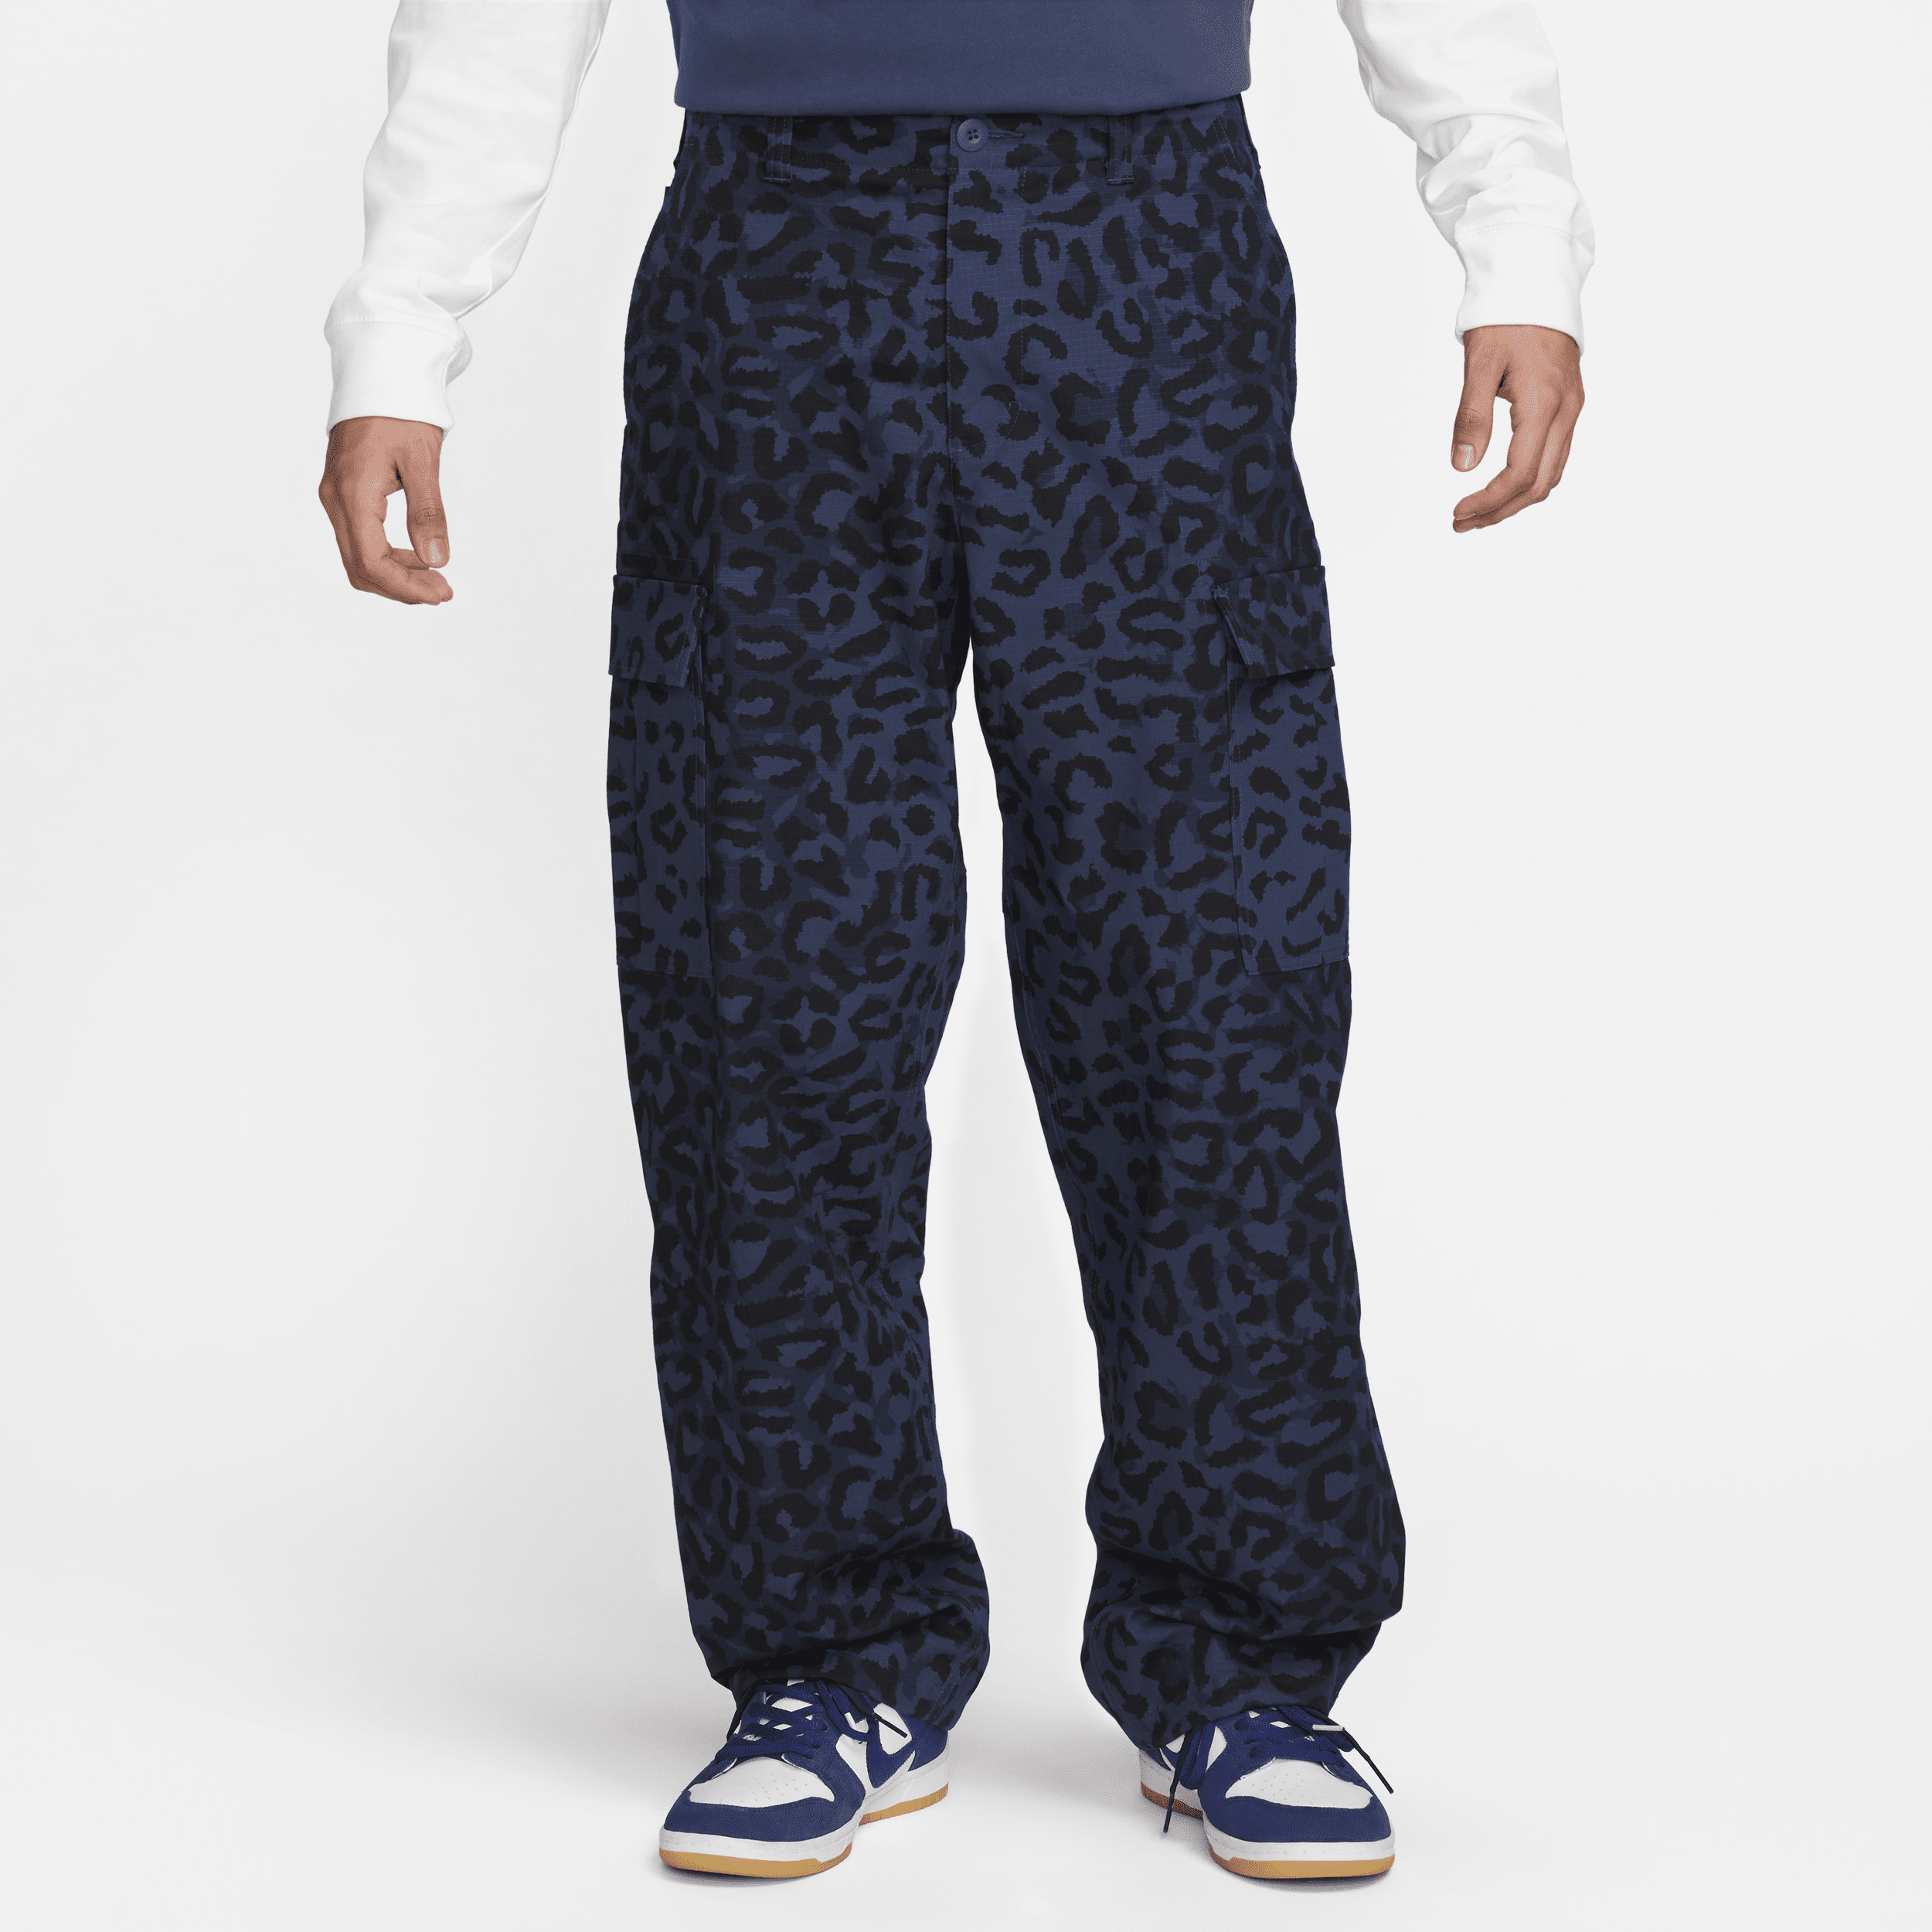 Nike SB Kearny Pantalón cargo con estampado por toda la prenda - Hombre - Azul